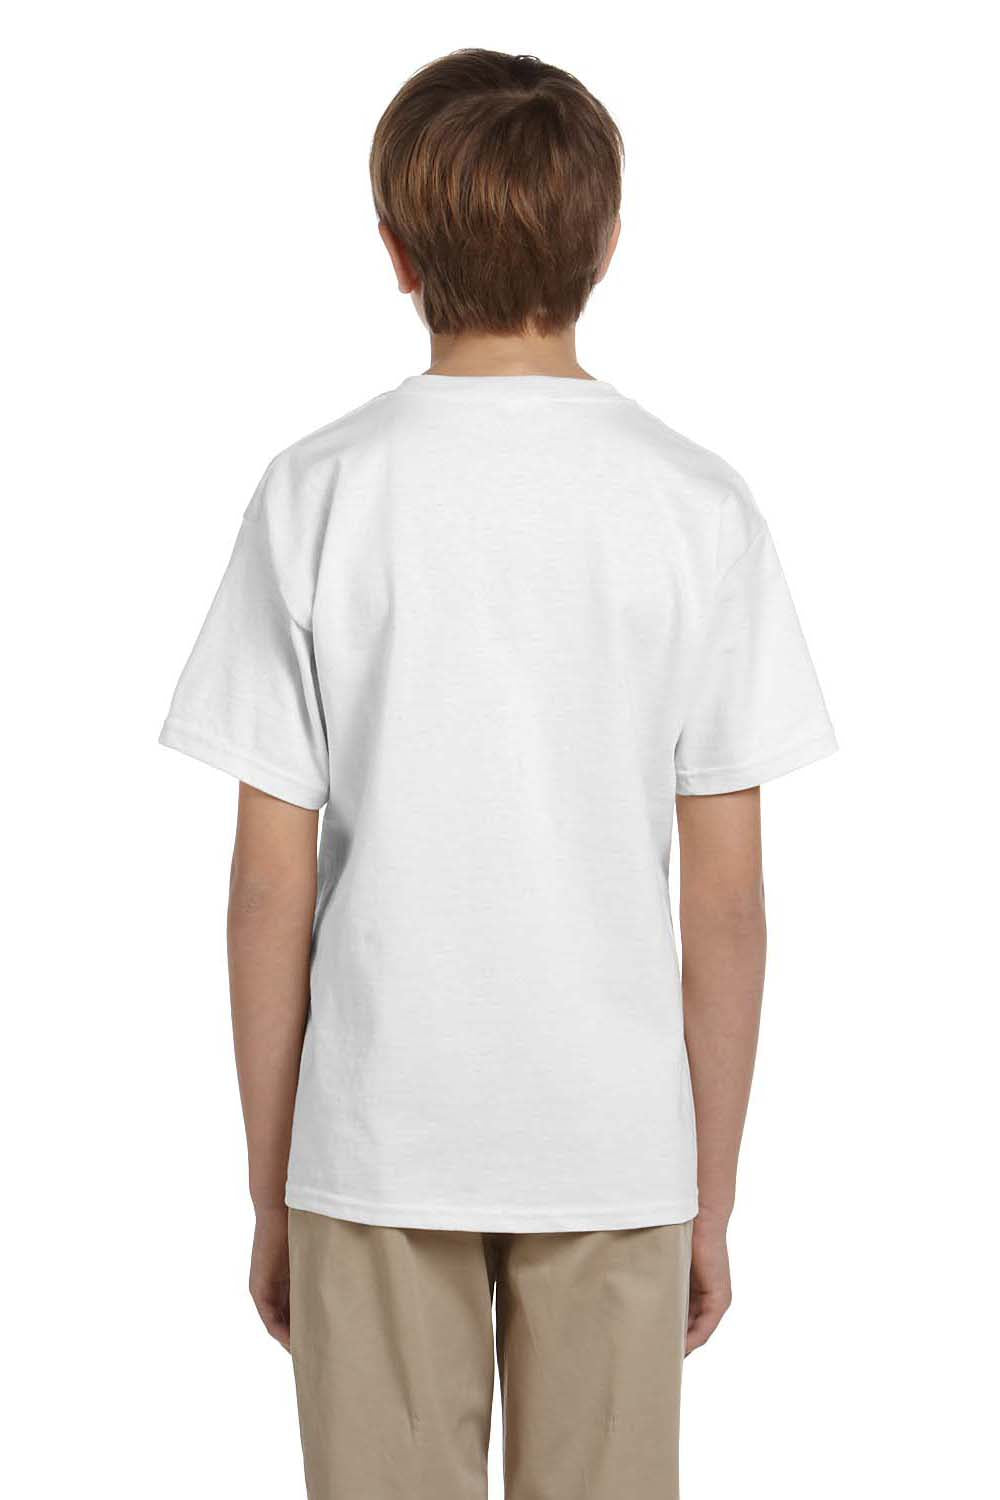 Hanes 5370 Youth EcoSmart Short Sleeve Crewneck T-Shirt White Back